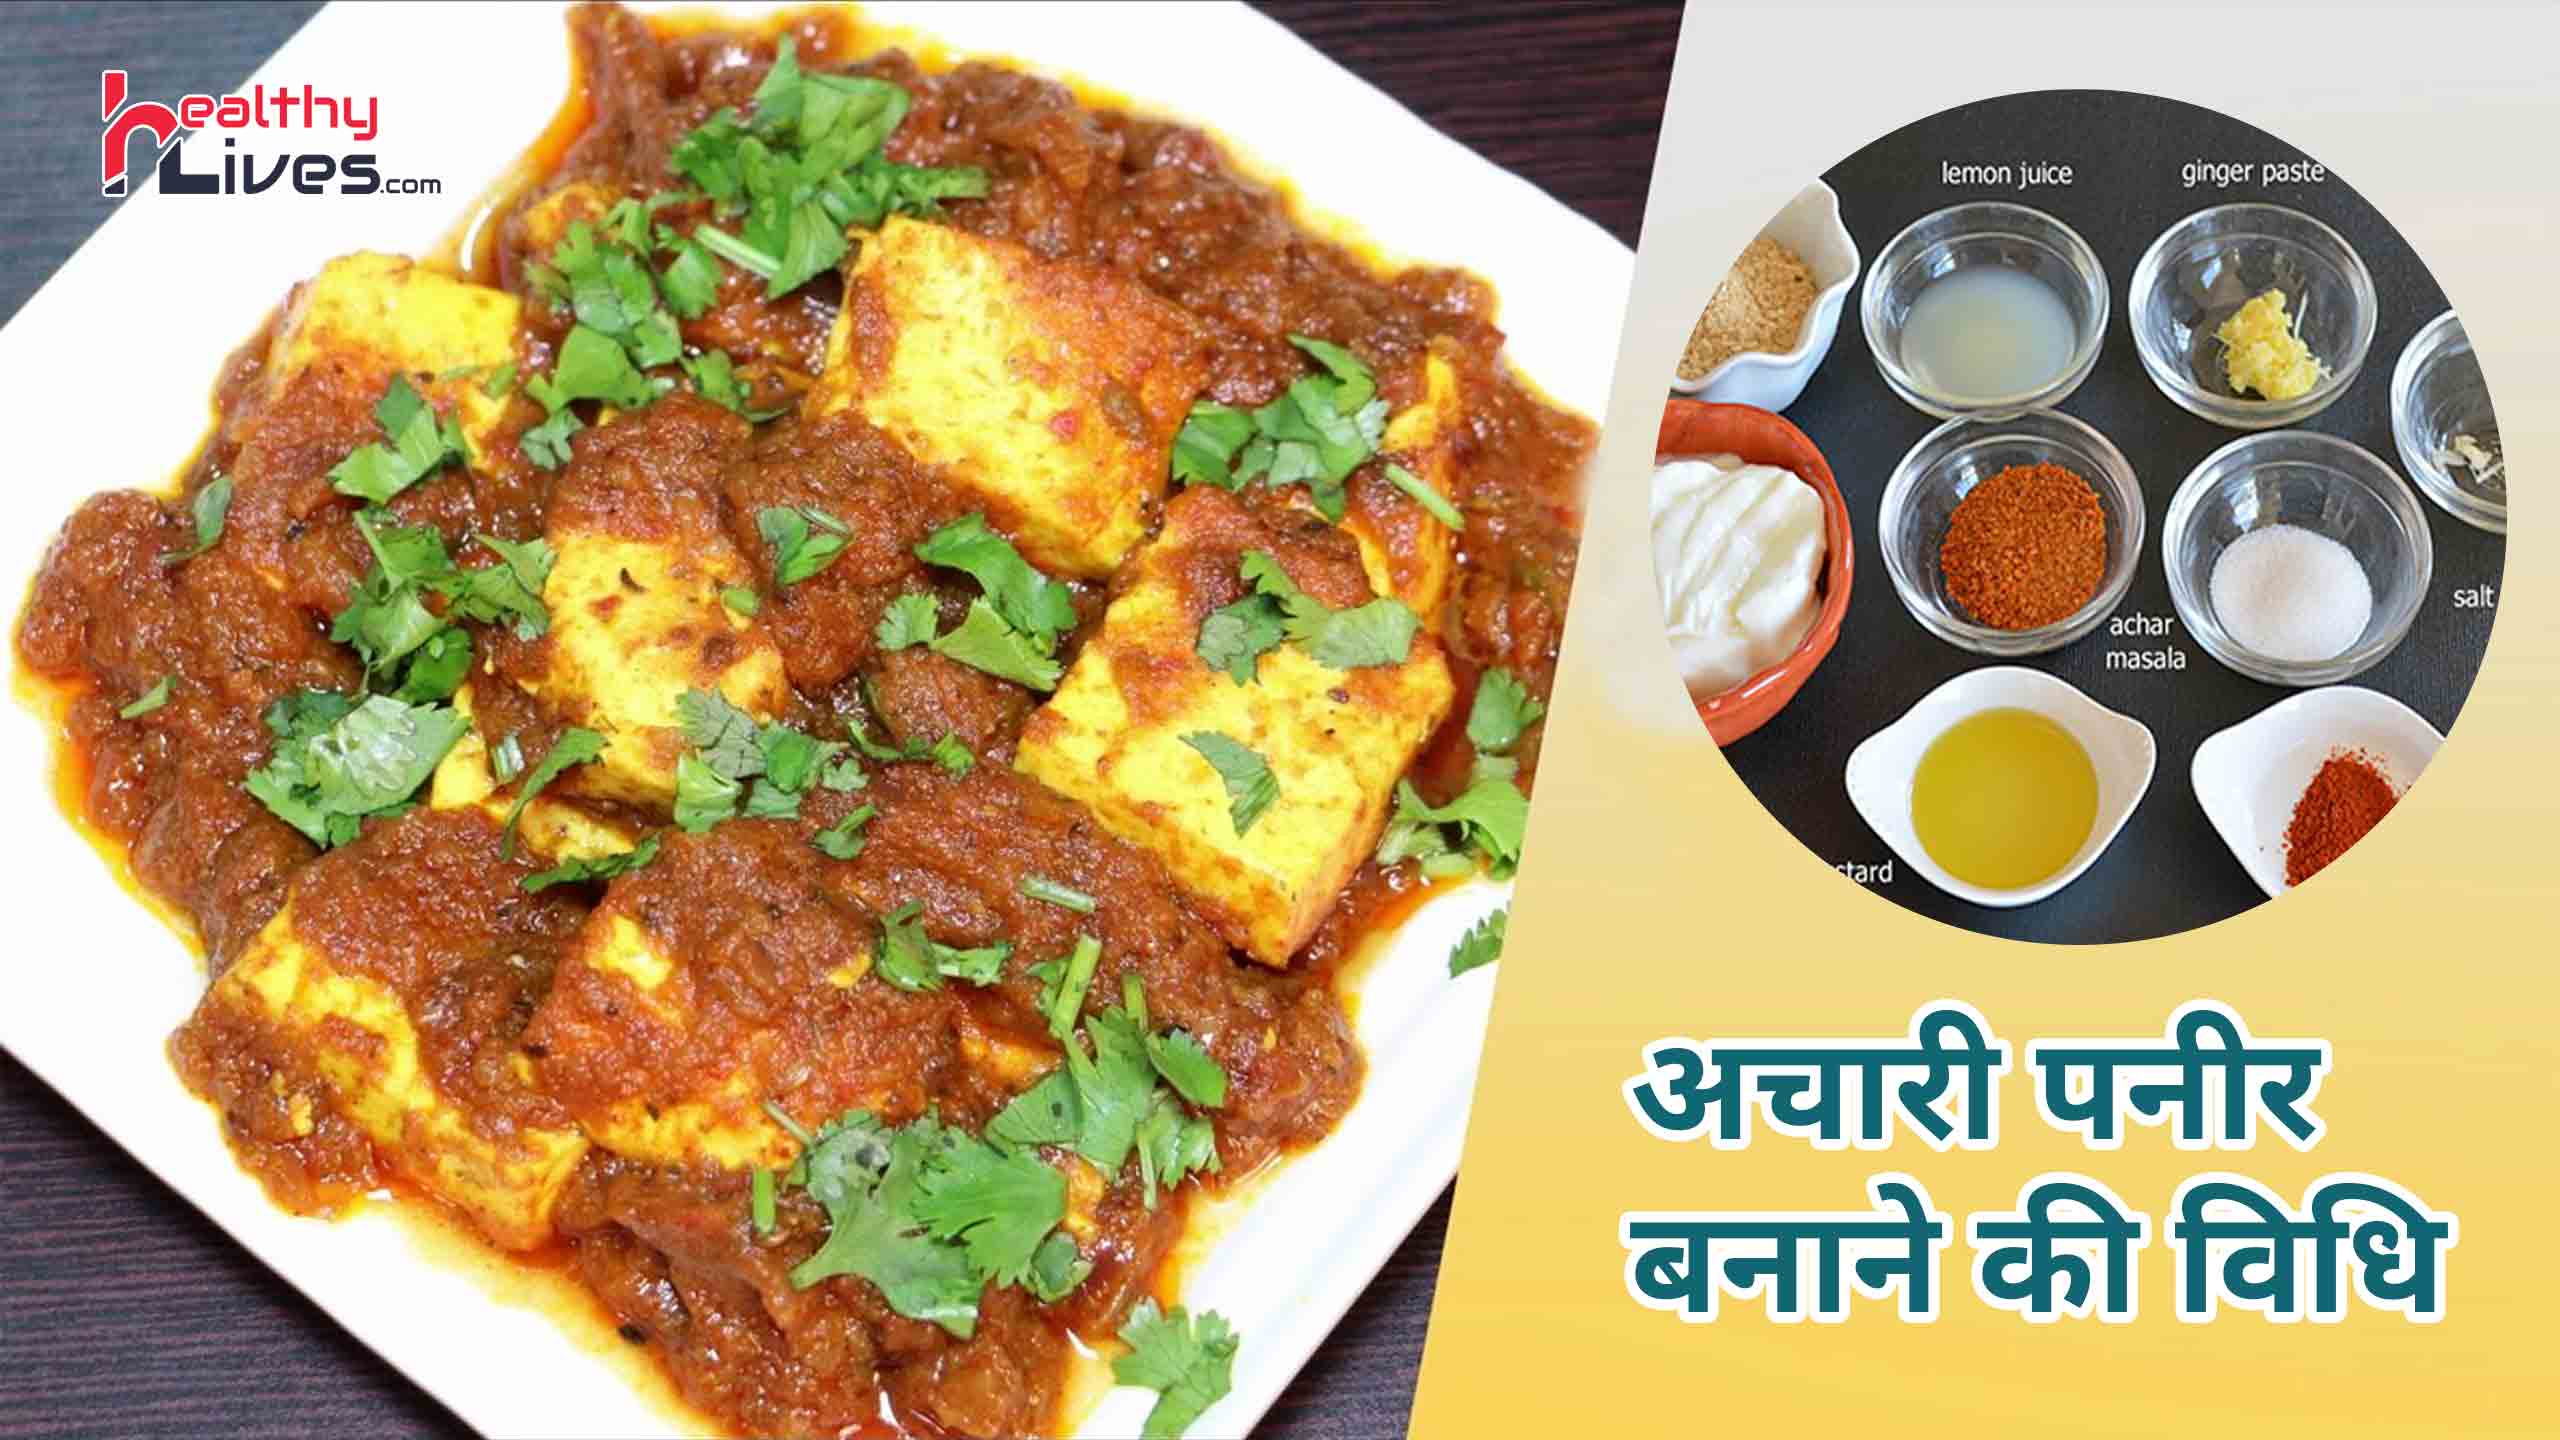 Achari Paneer Recipe in Hindi: बनाये स्वादिष्ट चटपटी अचारी पनीर की डिश